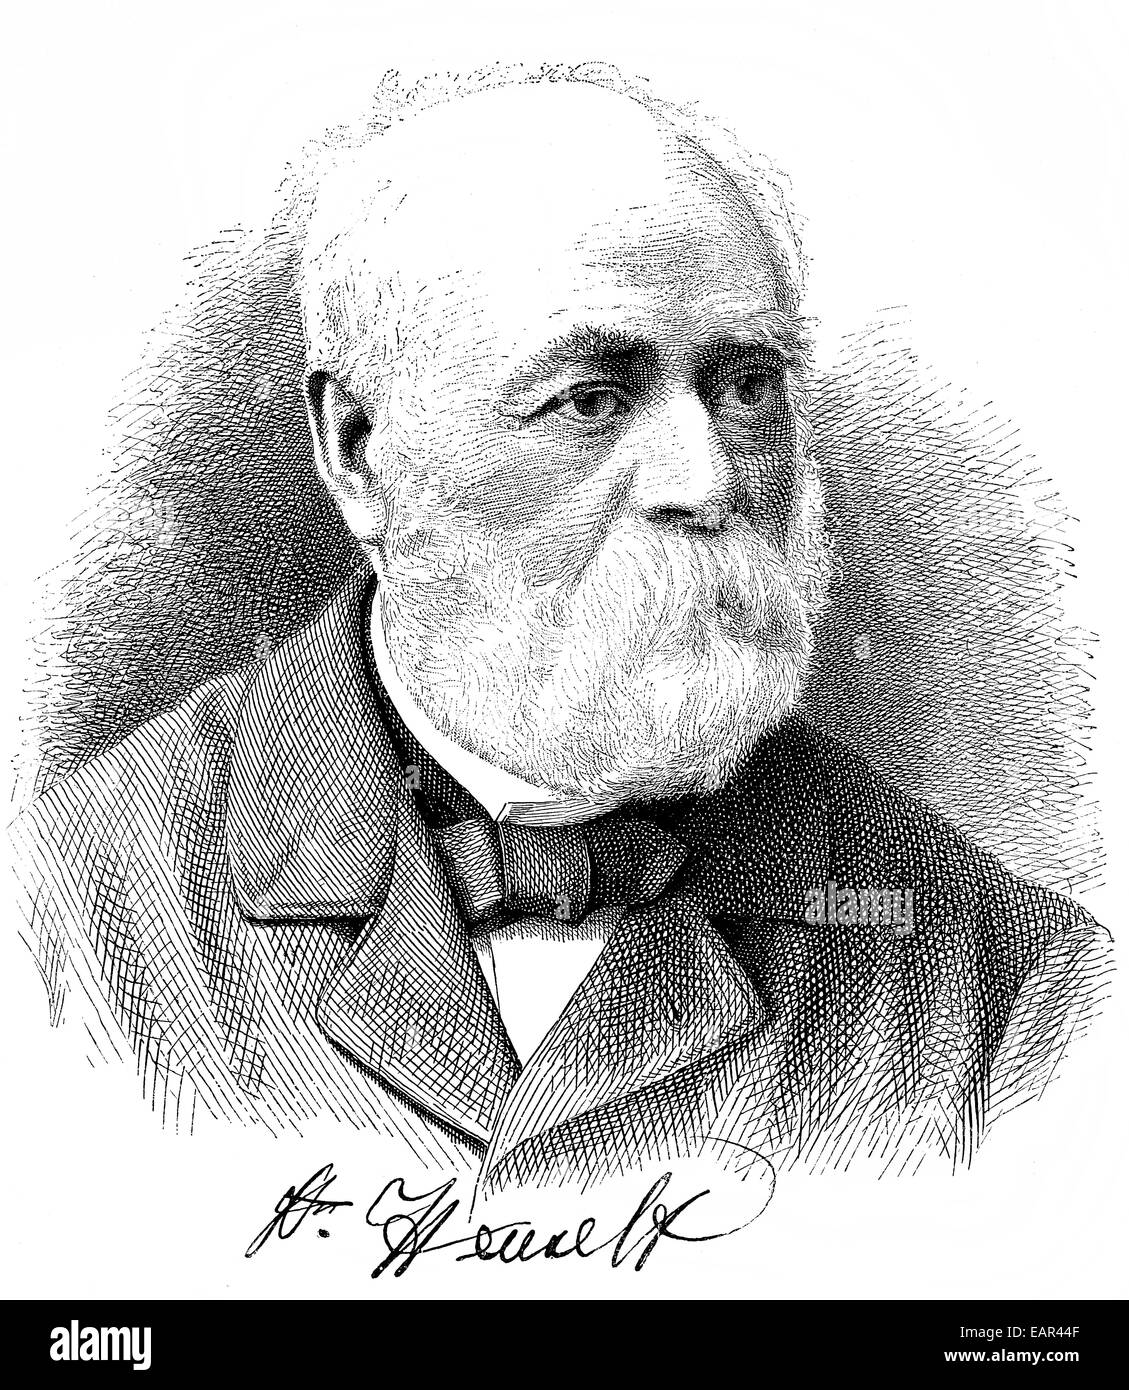 Adolph von Henselt auch bekannt als George Martin Adolph Haenselt, 1814-1889, deutscher Komponist und Klaviervirtuose der späten Ro Stockfoto